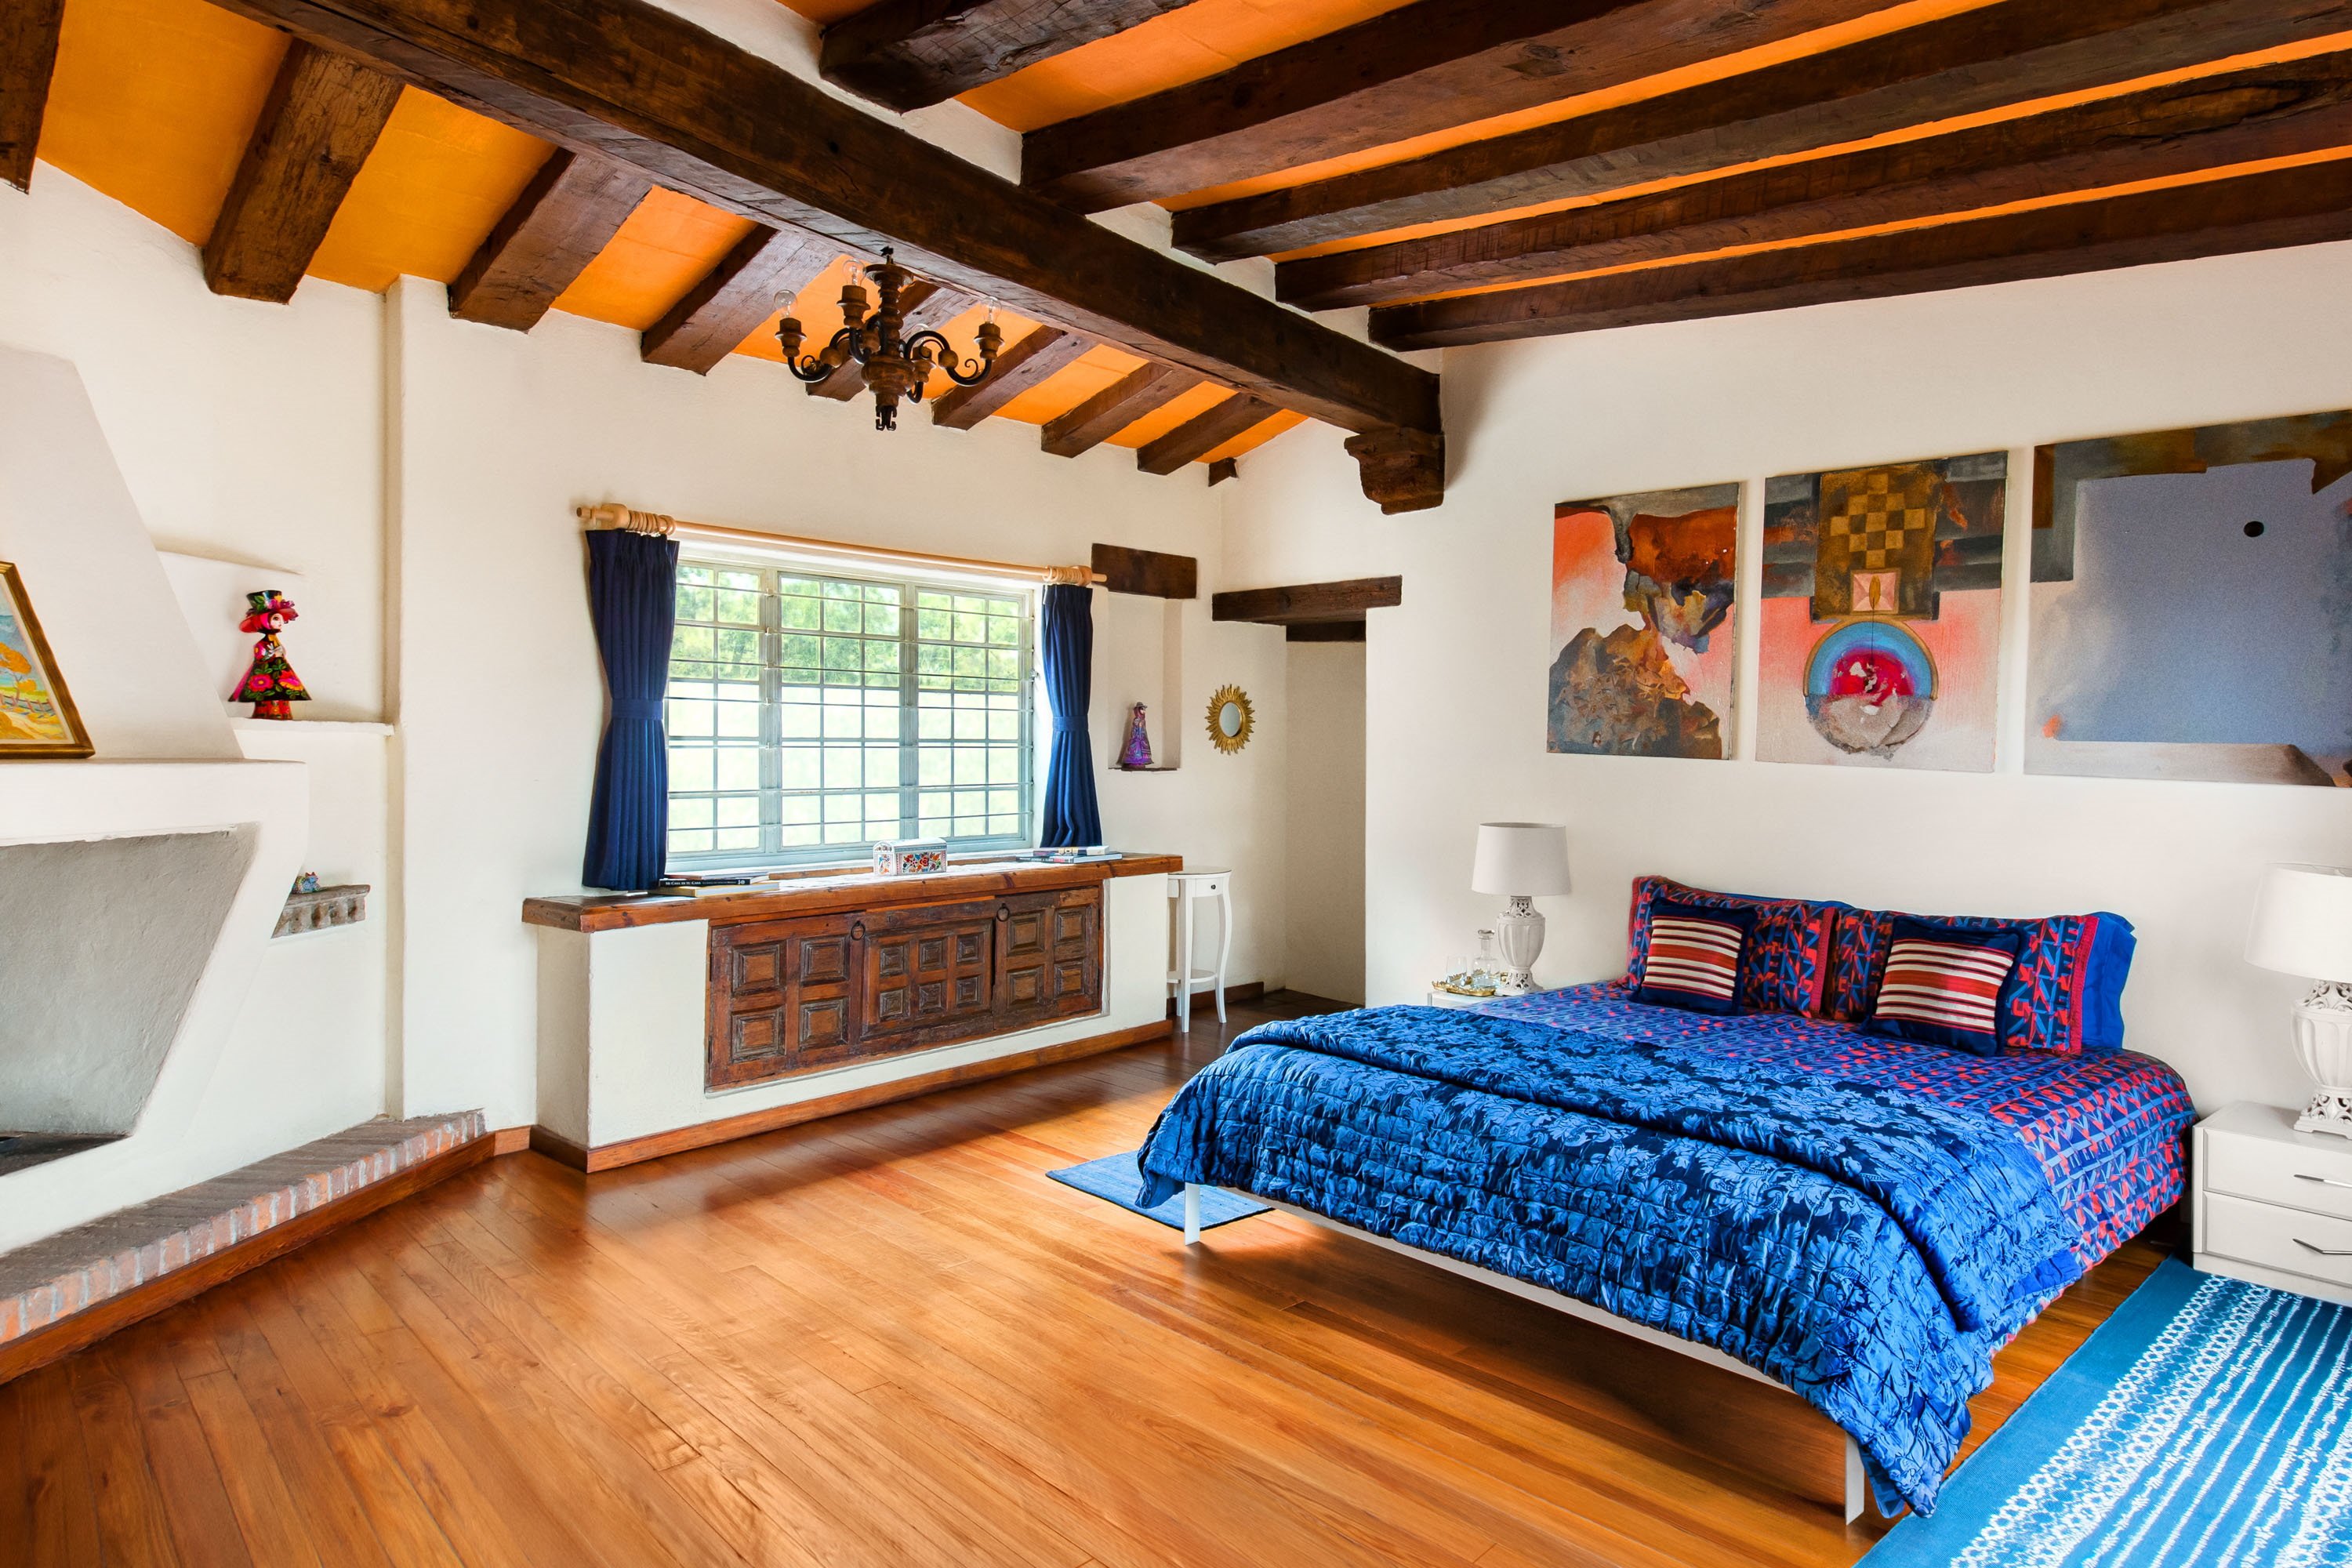 Airbnb potencia el lloguer d'habitacions i afegeix un actiu més al mercat turístic i immobiliari